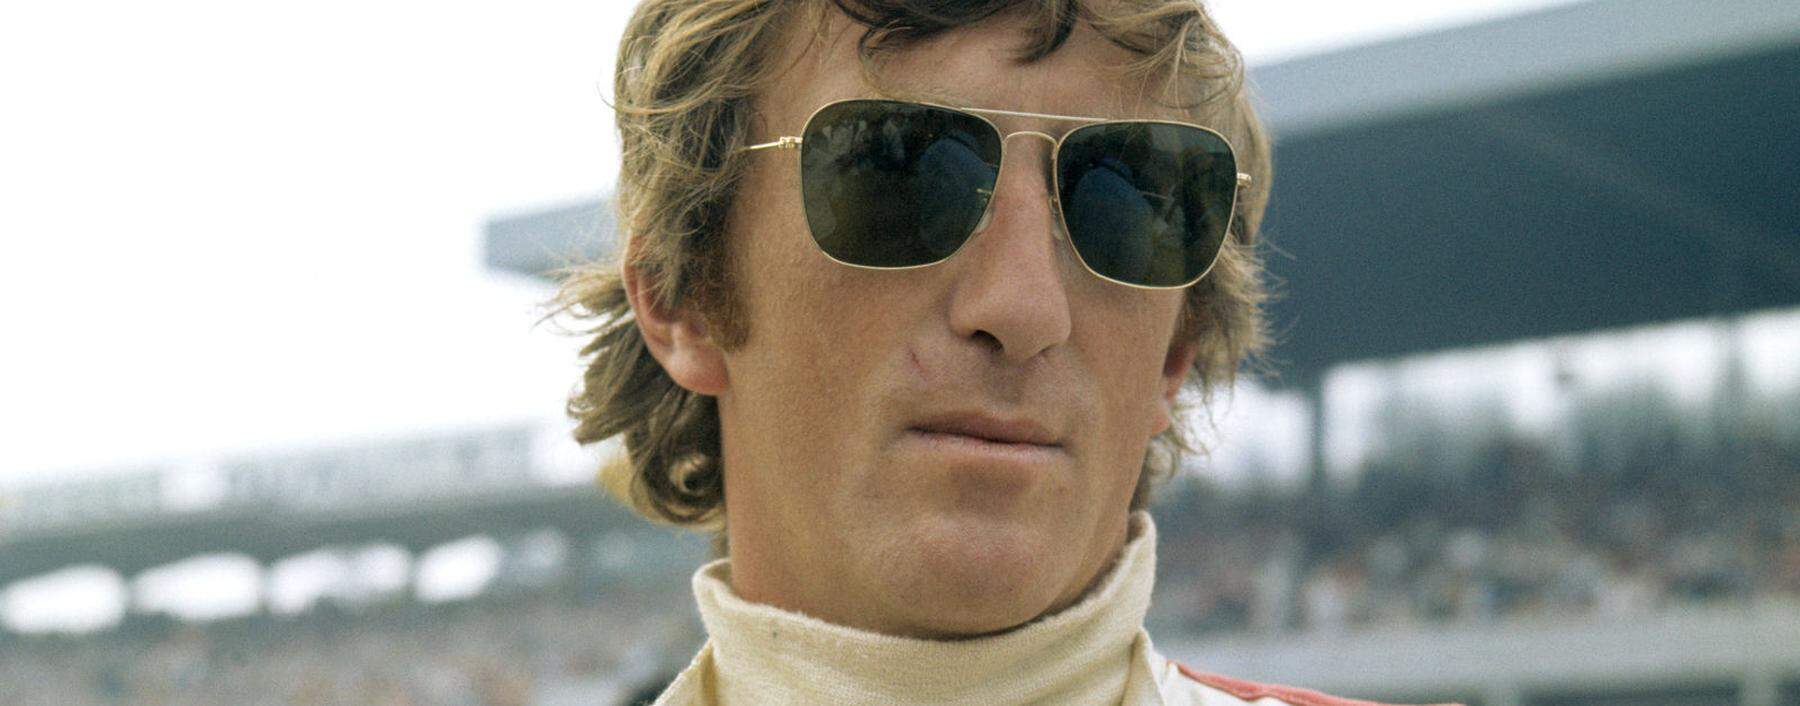 Jochen Rindt, ausnahmsweise ohne Zigarette, starb im Alter von 28 Jahren.